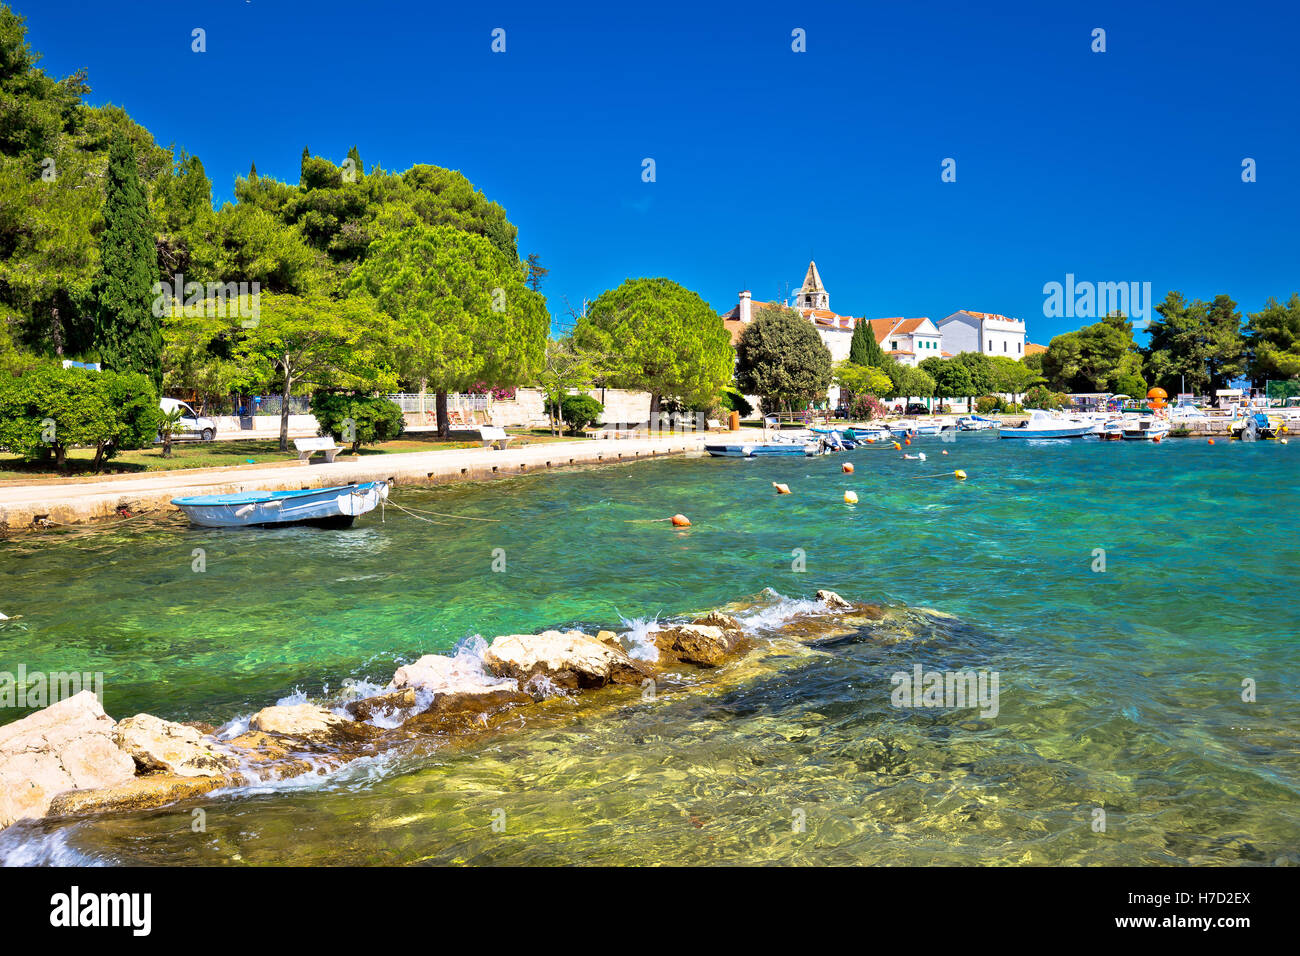 Village côtier de Sveti Filip i Jakov beach view, Dalmatie, Croatie Banque D'Images